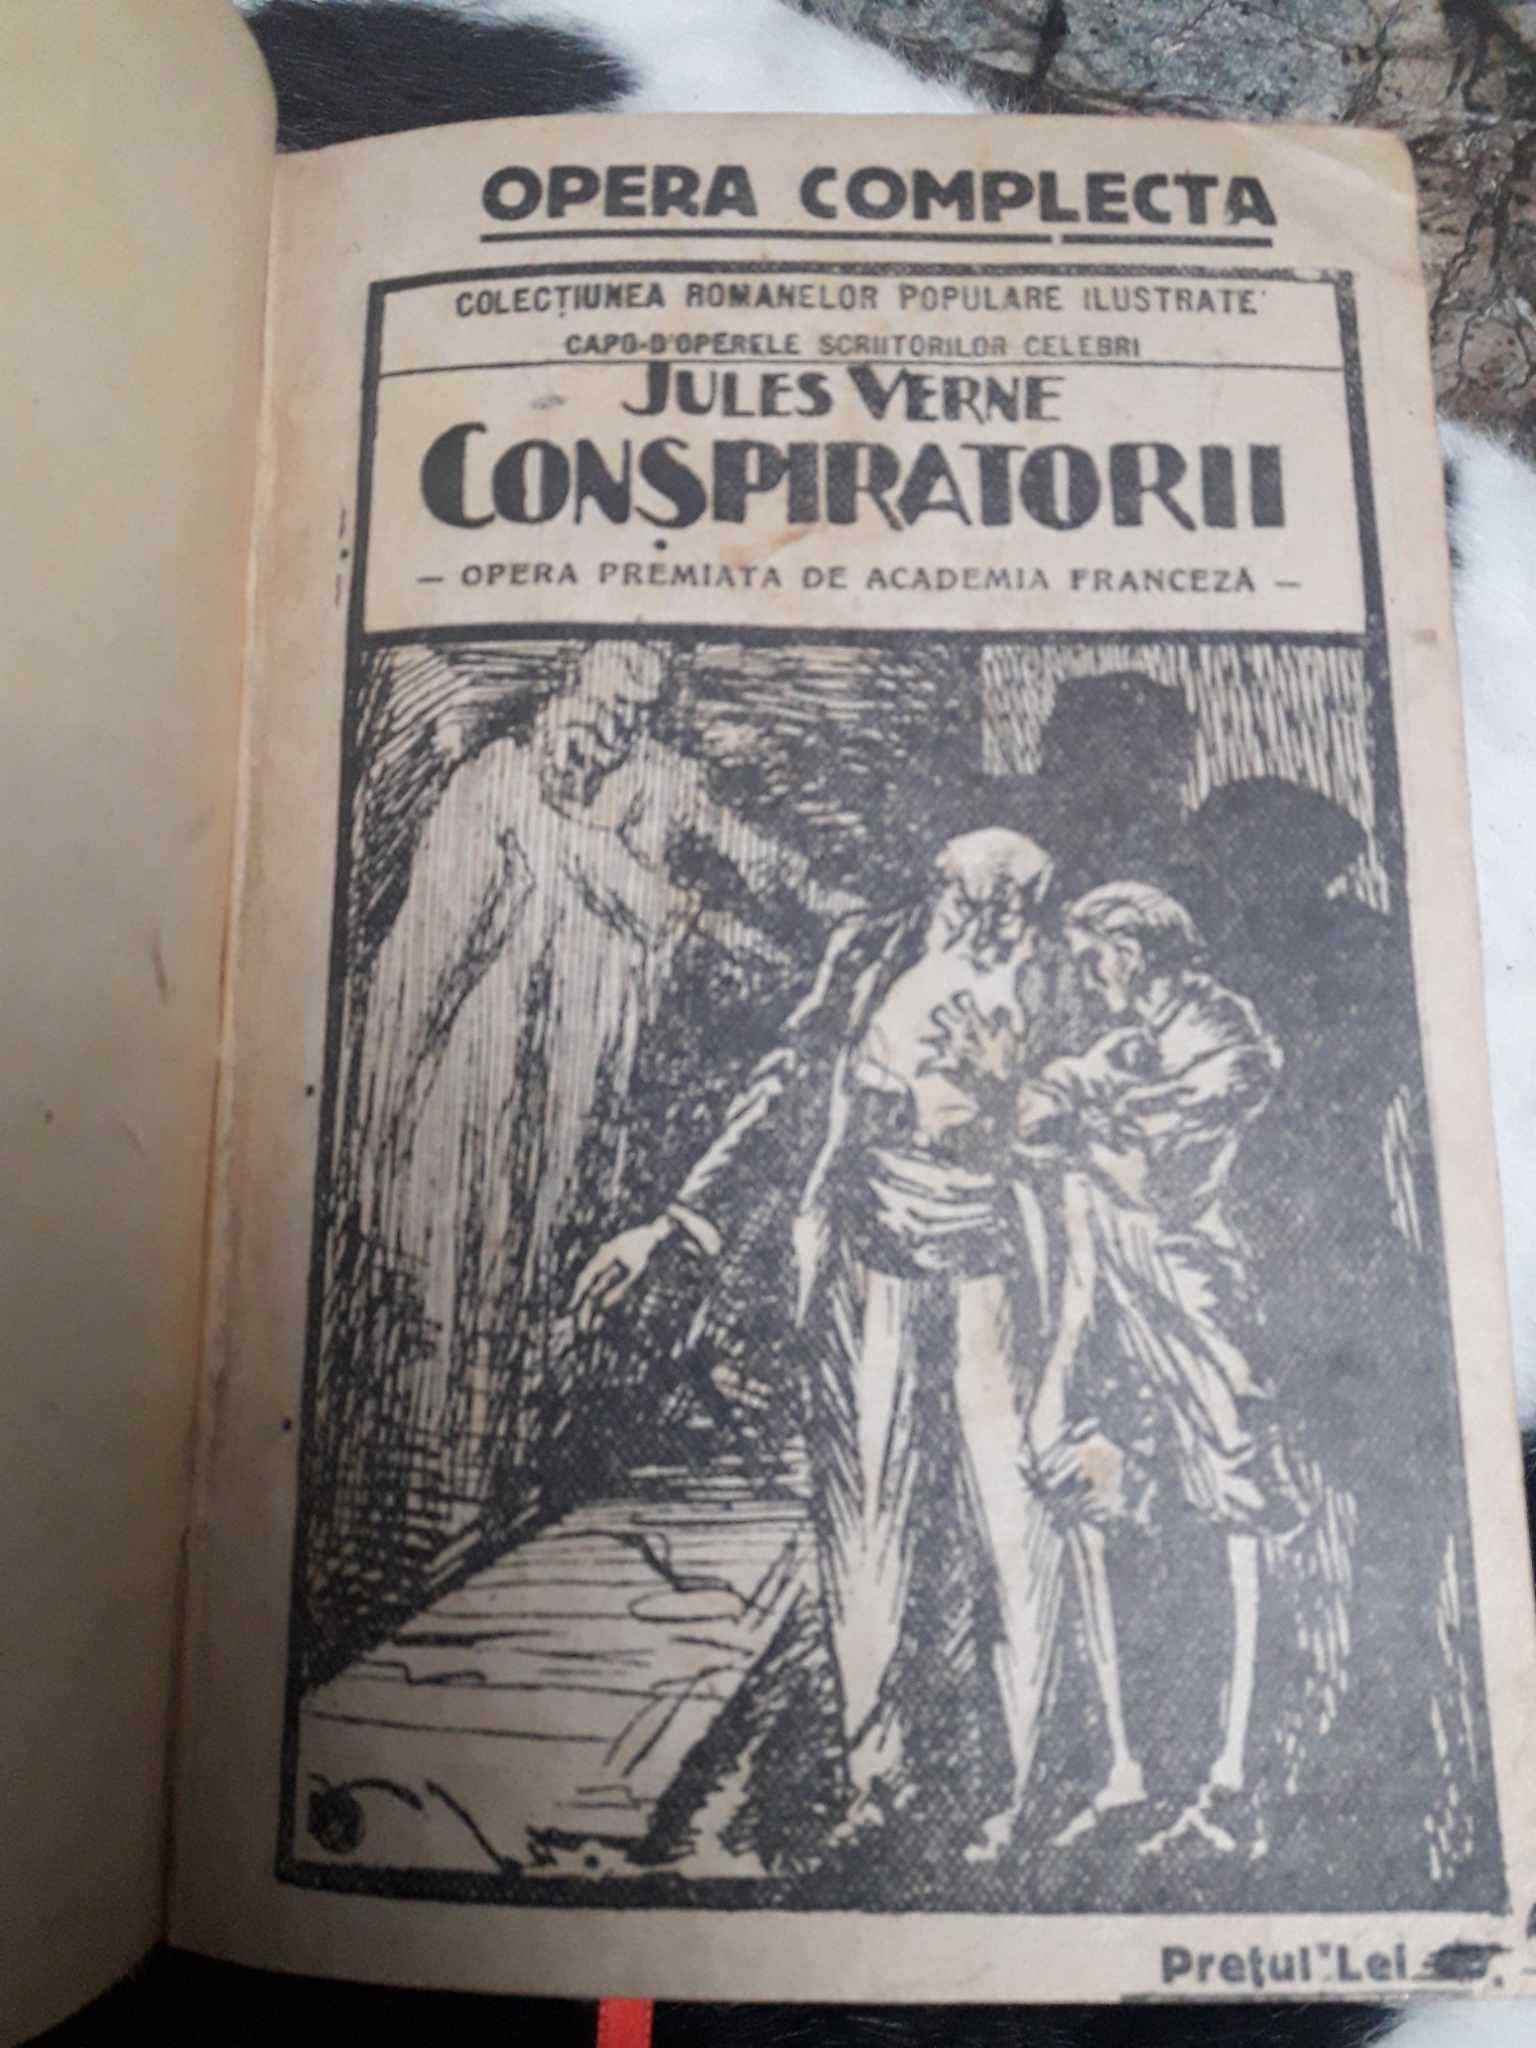 Conspiratorii-Jules Verne-1930 in fascicole,LEGATURA LUX